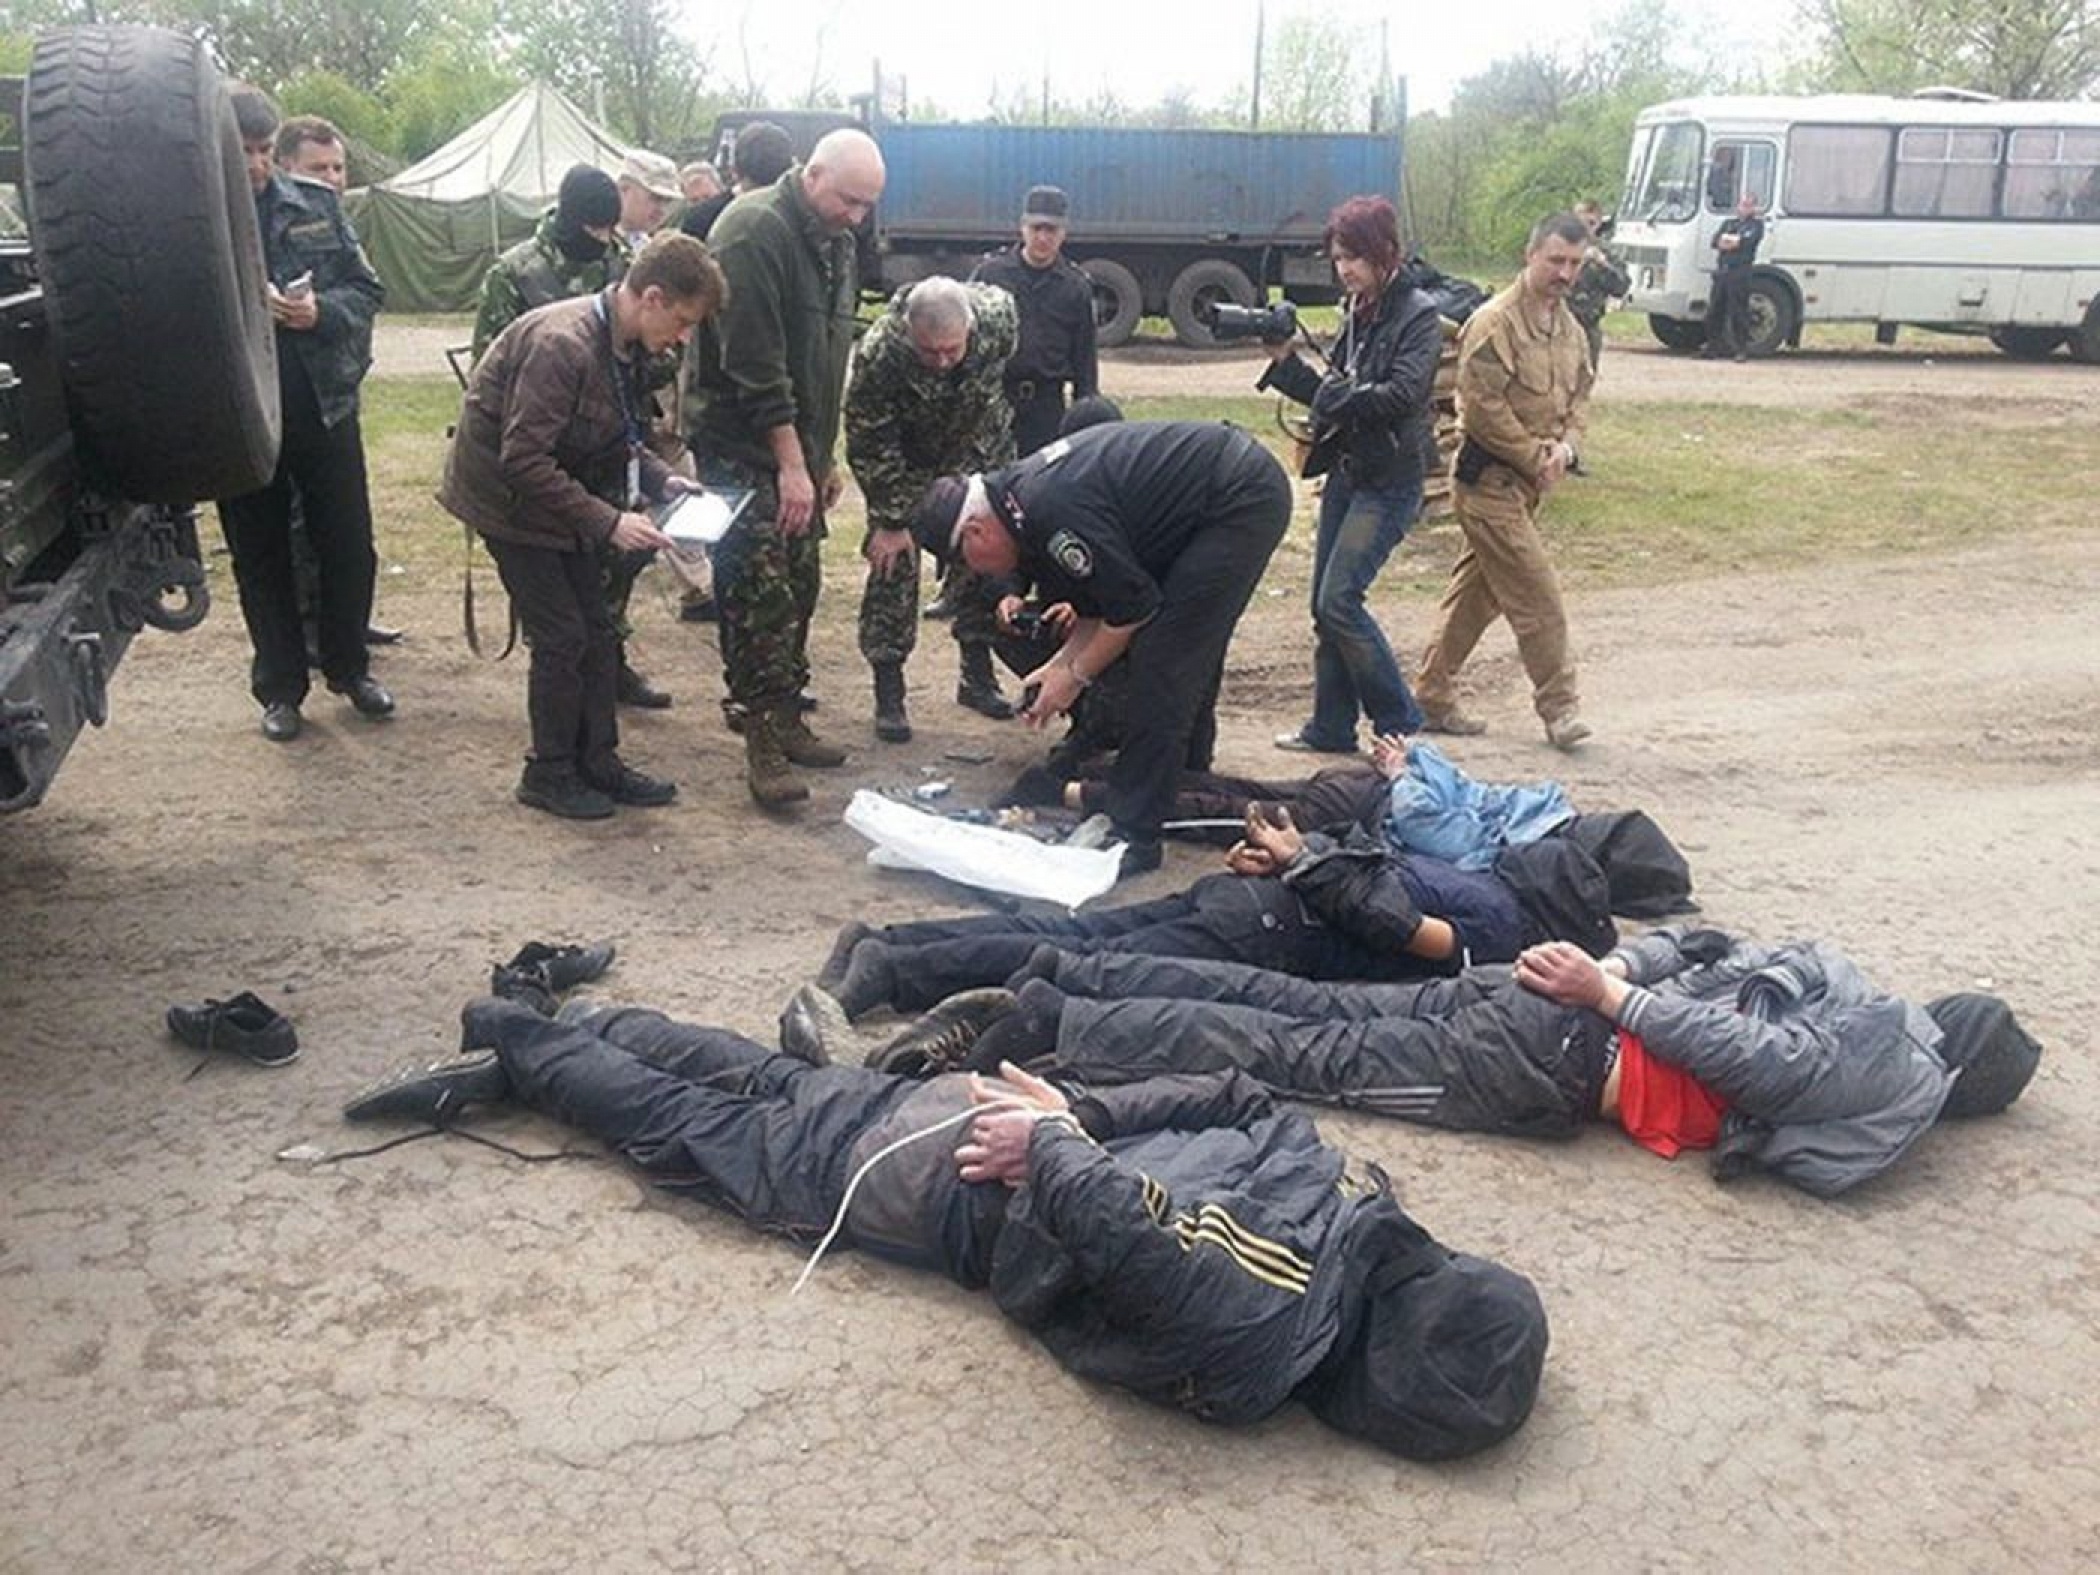 Задержанные люди, подозреваемые в обстреле военных вертолетов вблизи Славянска, Украина, 2 мая 2014 года. Фото предоставлено пресс-службой МВД Украины / DYVYS